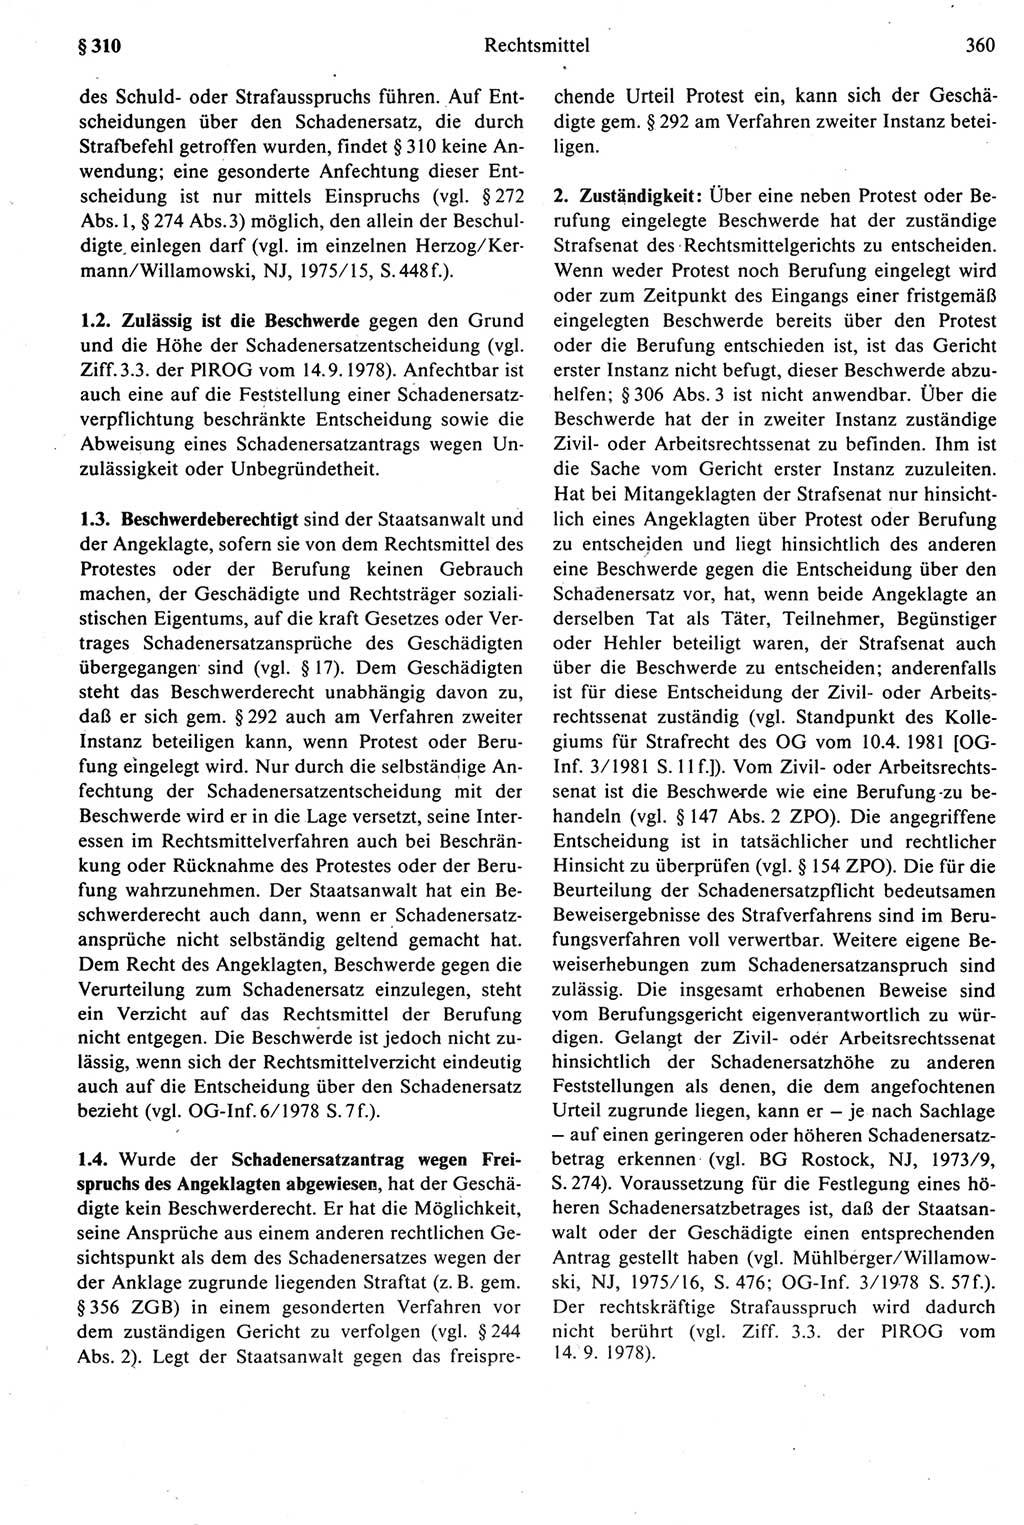 Strafprozeßrecht der DDR [Deutsche Demokratische Republik], Kommentar zur Strafprozeßordnung (StPO) 1987, Seite 360 (Strafprozeßr. DDR Komm. StPO 1987, S. 360)